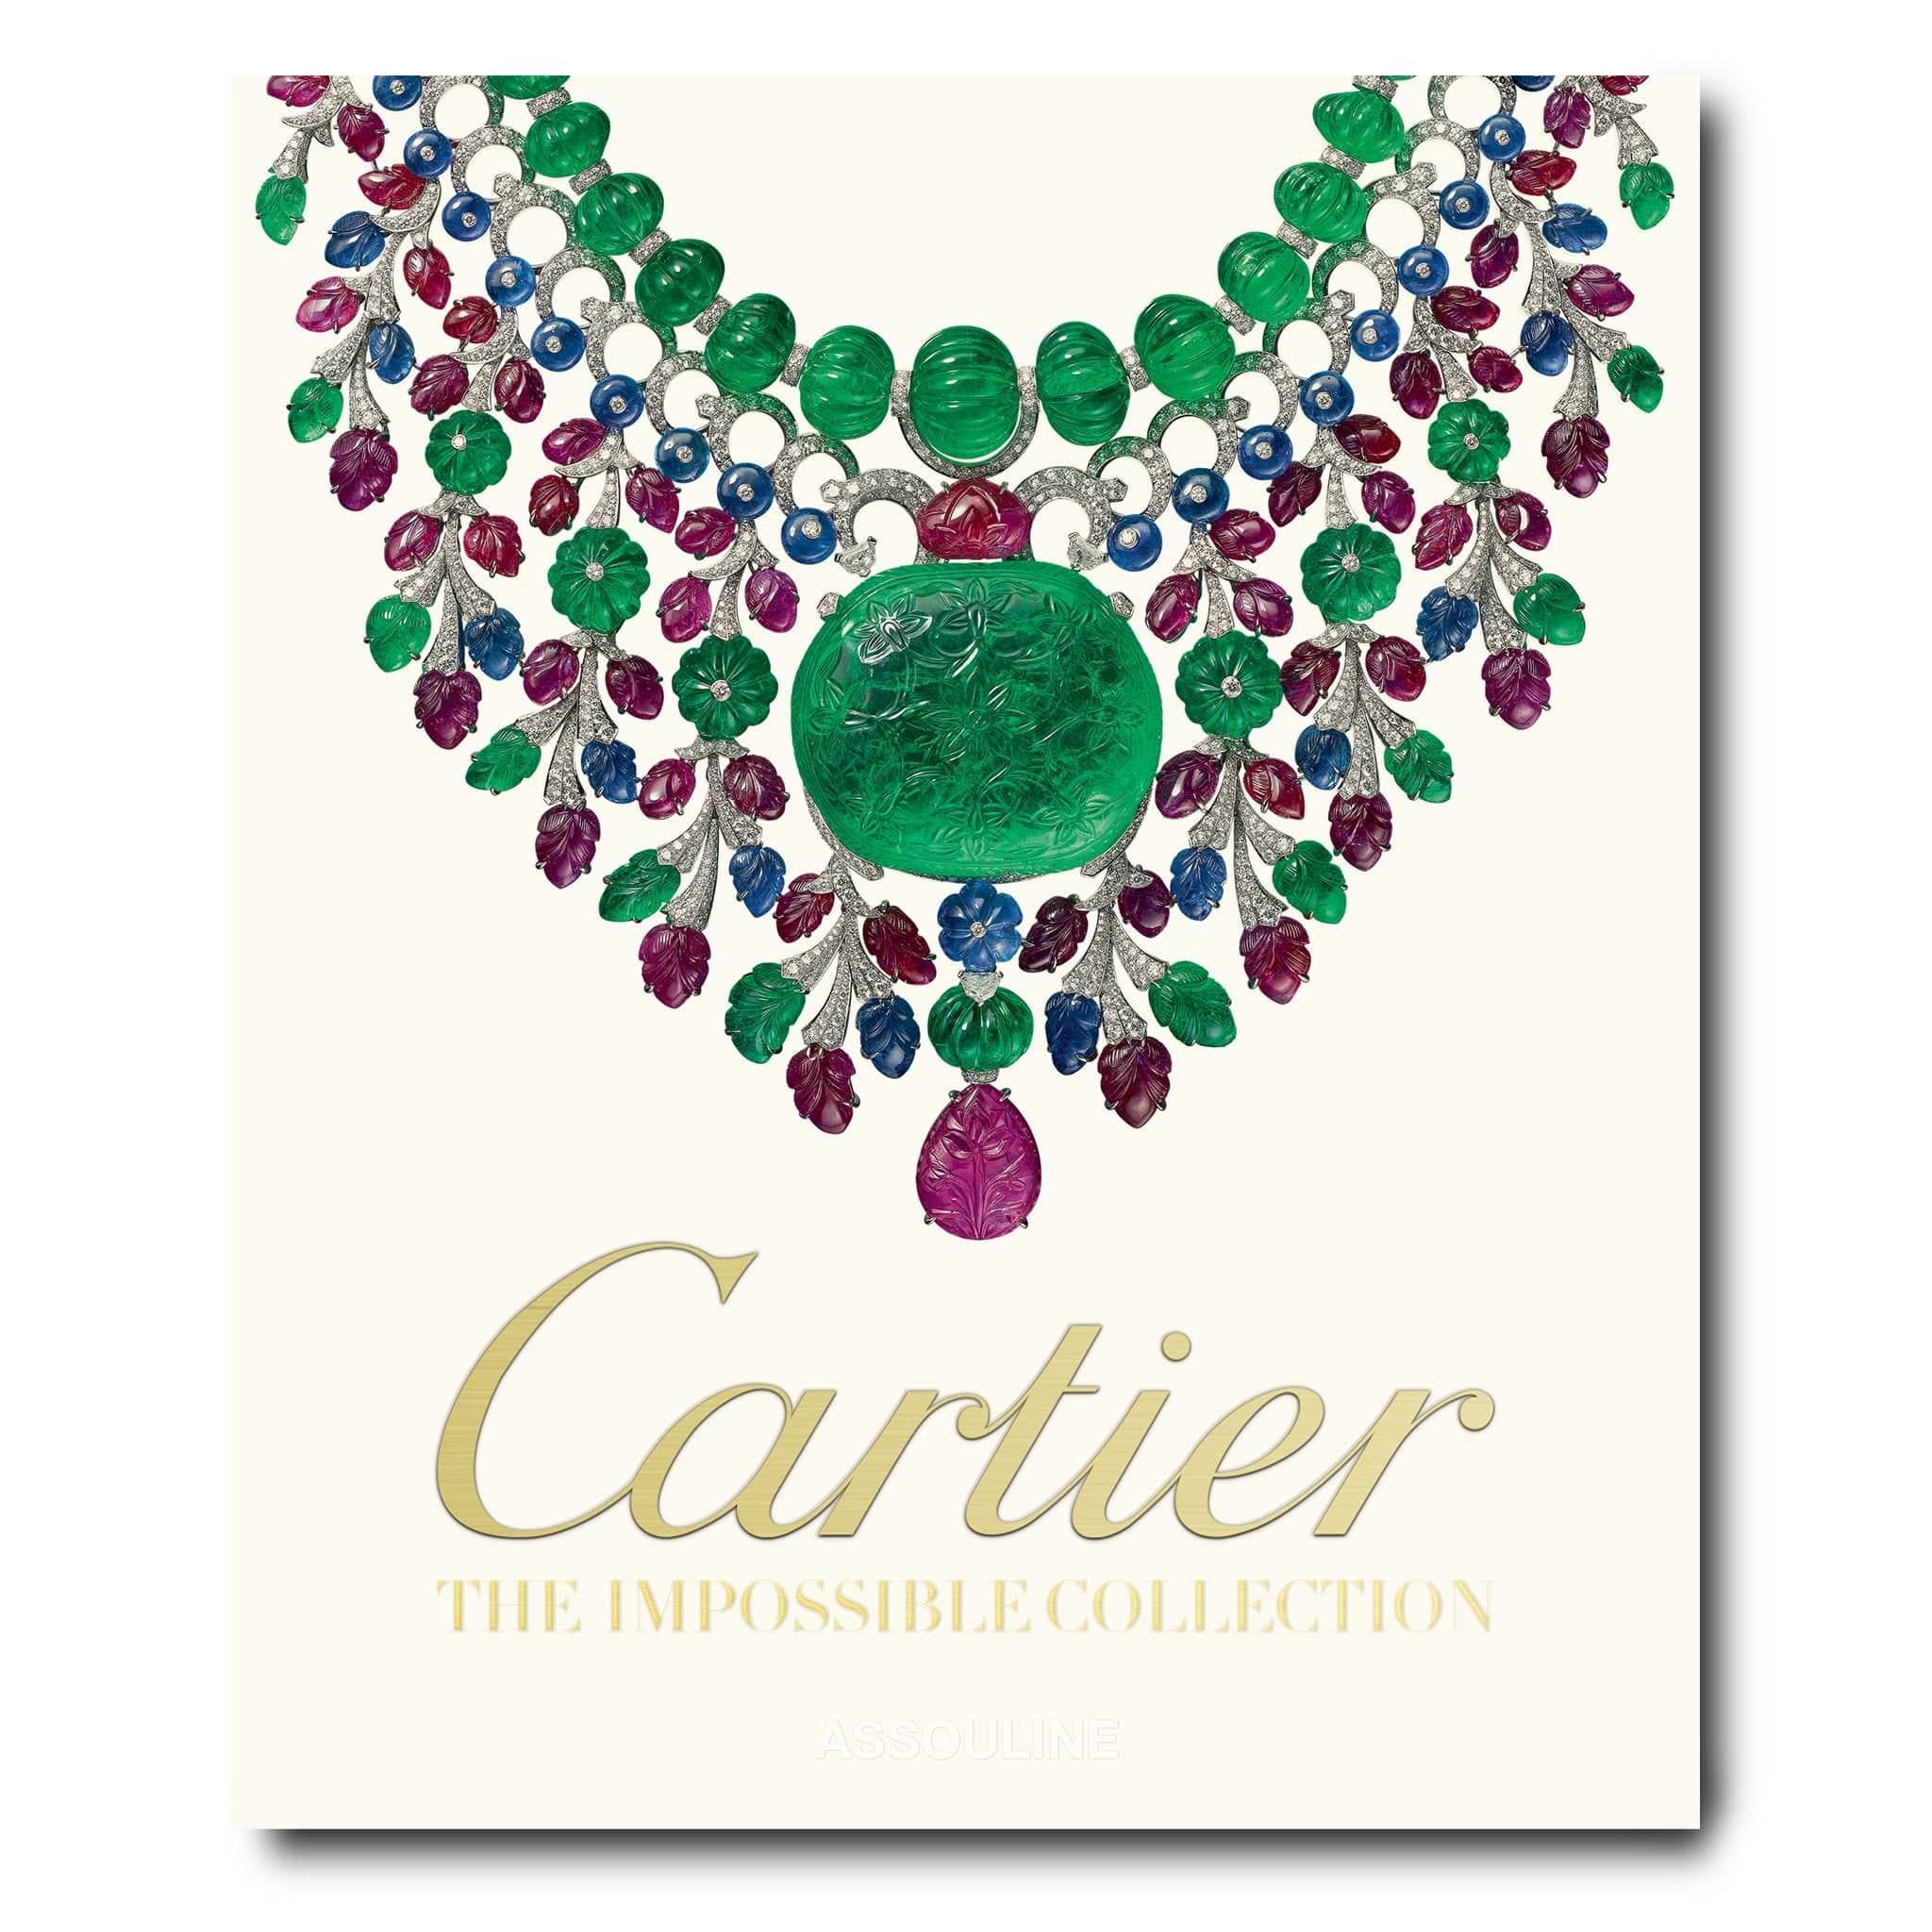 Cartier, seit dem neunzehnten Jahrhundert einer der weltweit führenden Luxusjuweliere, steht für eine Welt der Kunst und Schönheit, für ein Erbe von unvergleichlichem Prestige. Bis 1909 war Cartier der erste internationale Juwelier seiner Zeit, mit